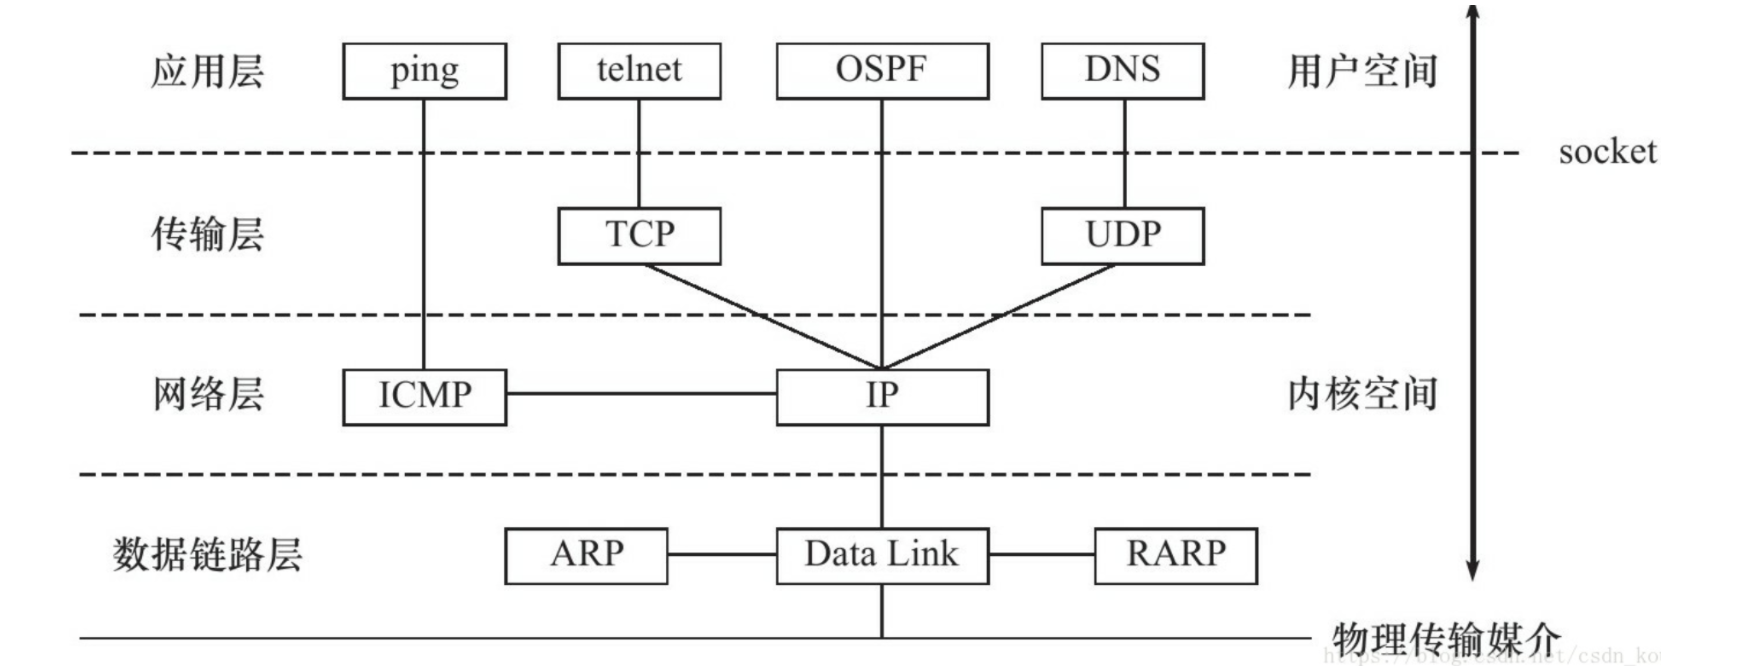 tcp/ip协议栈在linux内核中的运行时序分析